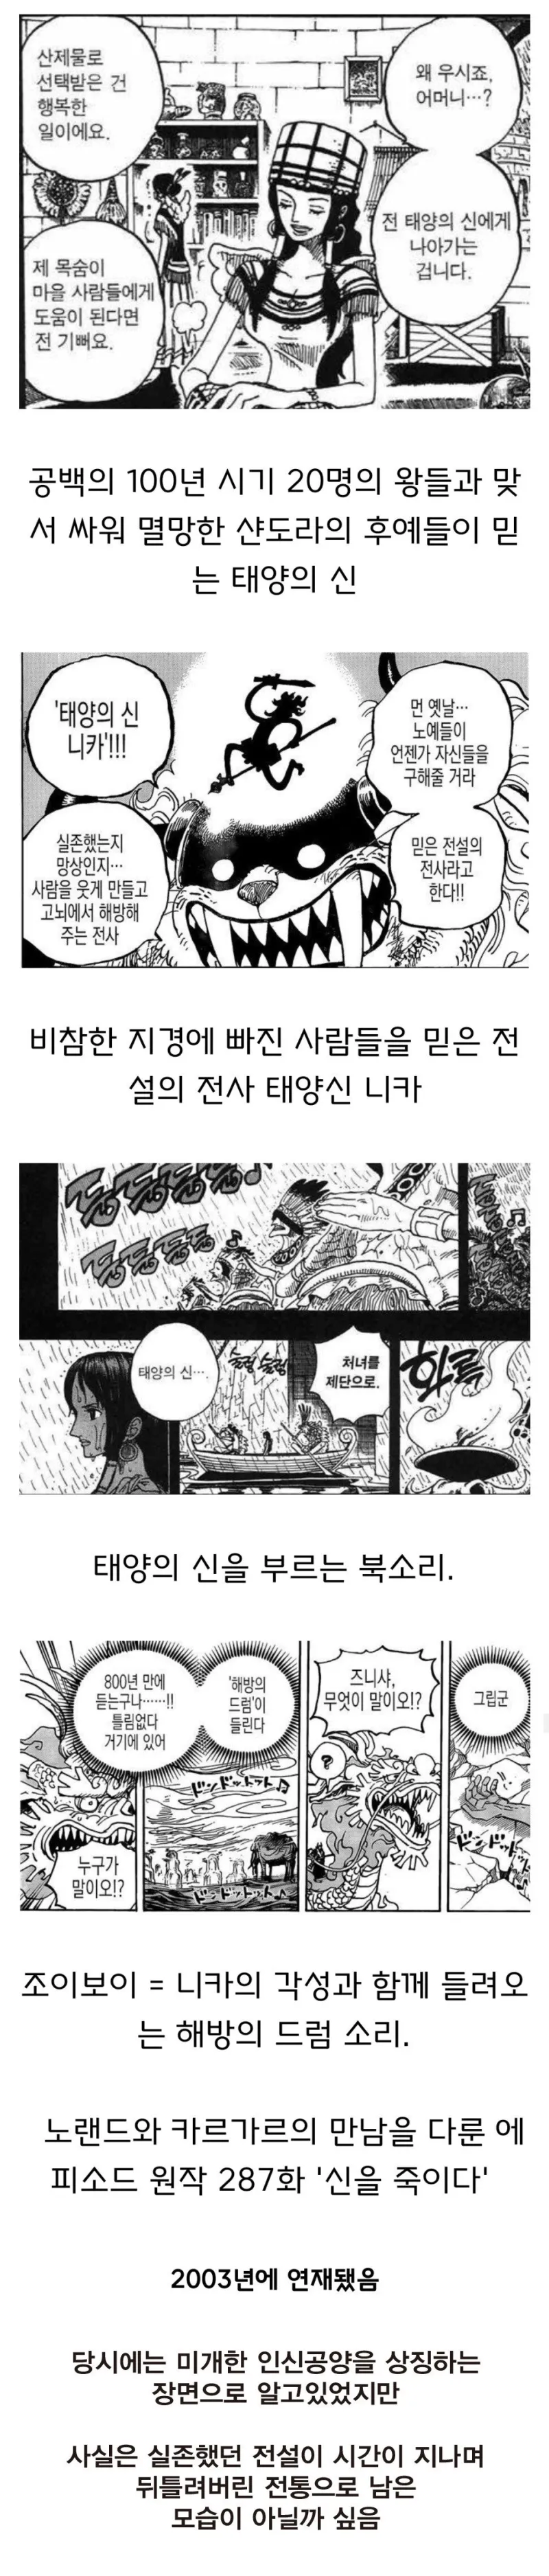 떡밥 원피스 원피스 인터뷰